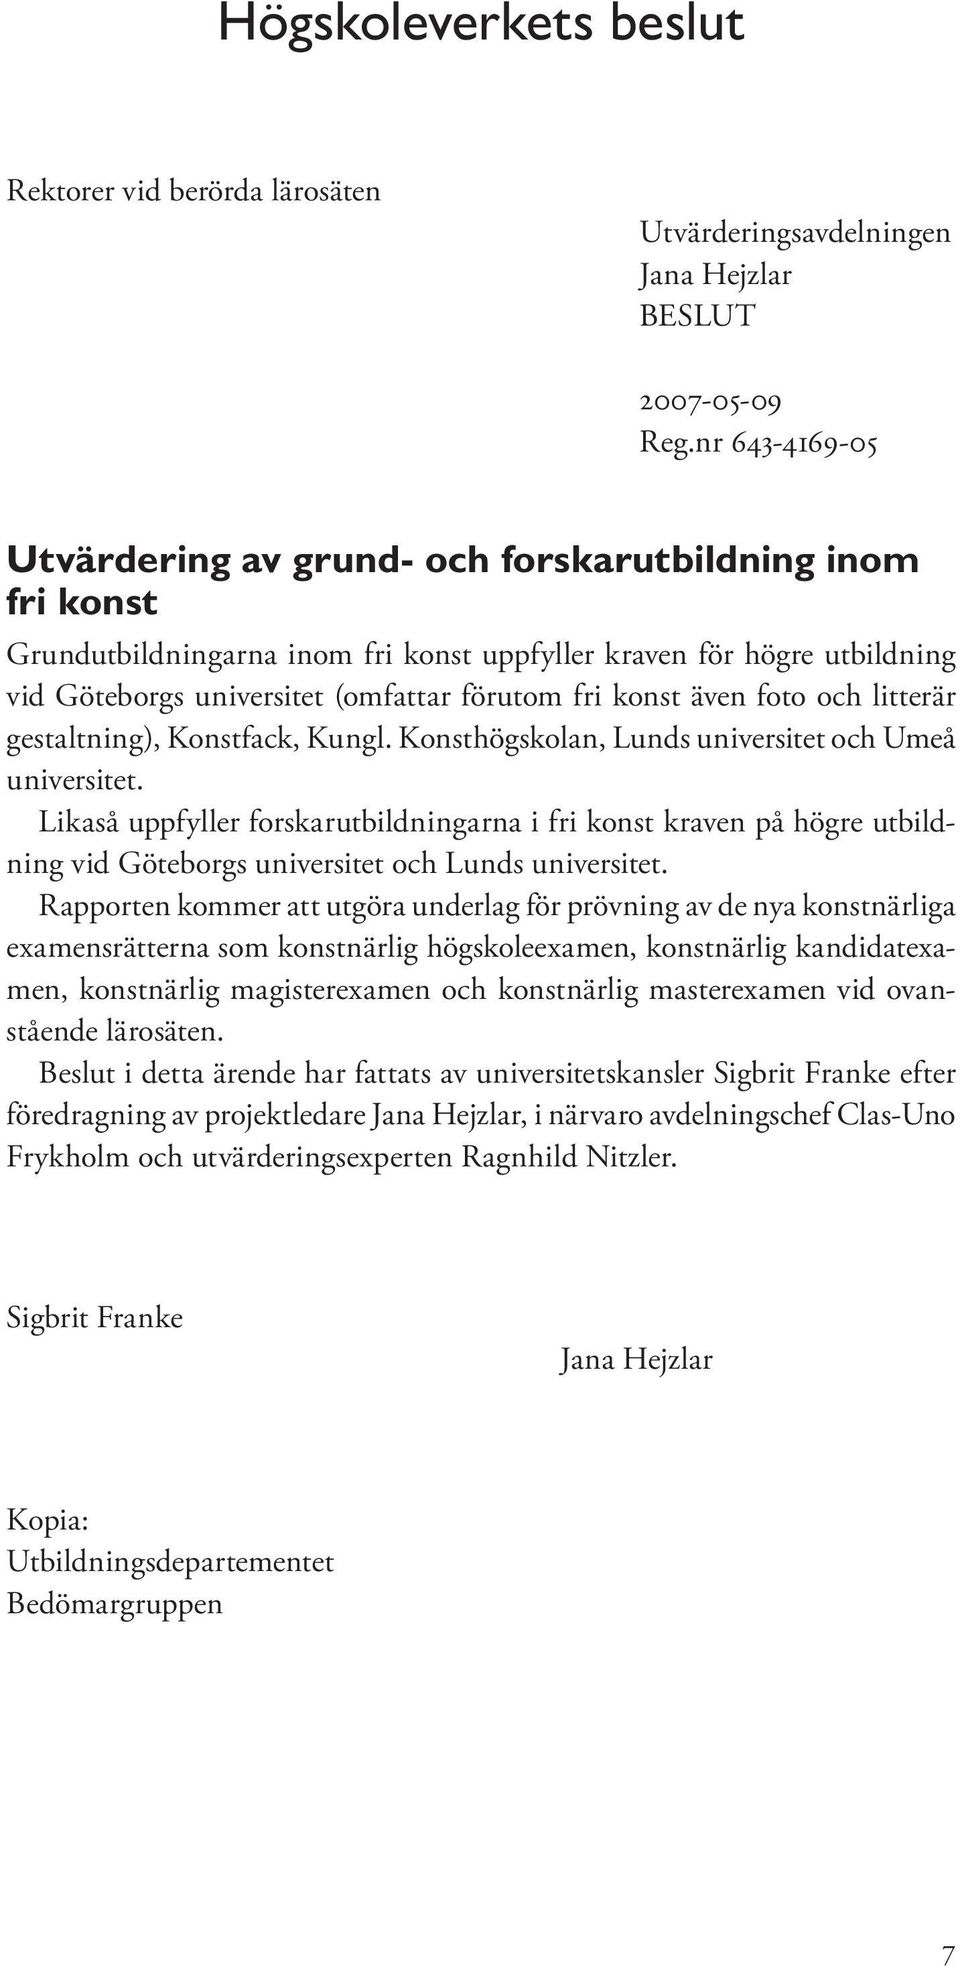 konst även foto och litterär gestaltning), Konstfack, Kungl. Konsthögskolan, Lunds universitet och Umeå universitet.